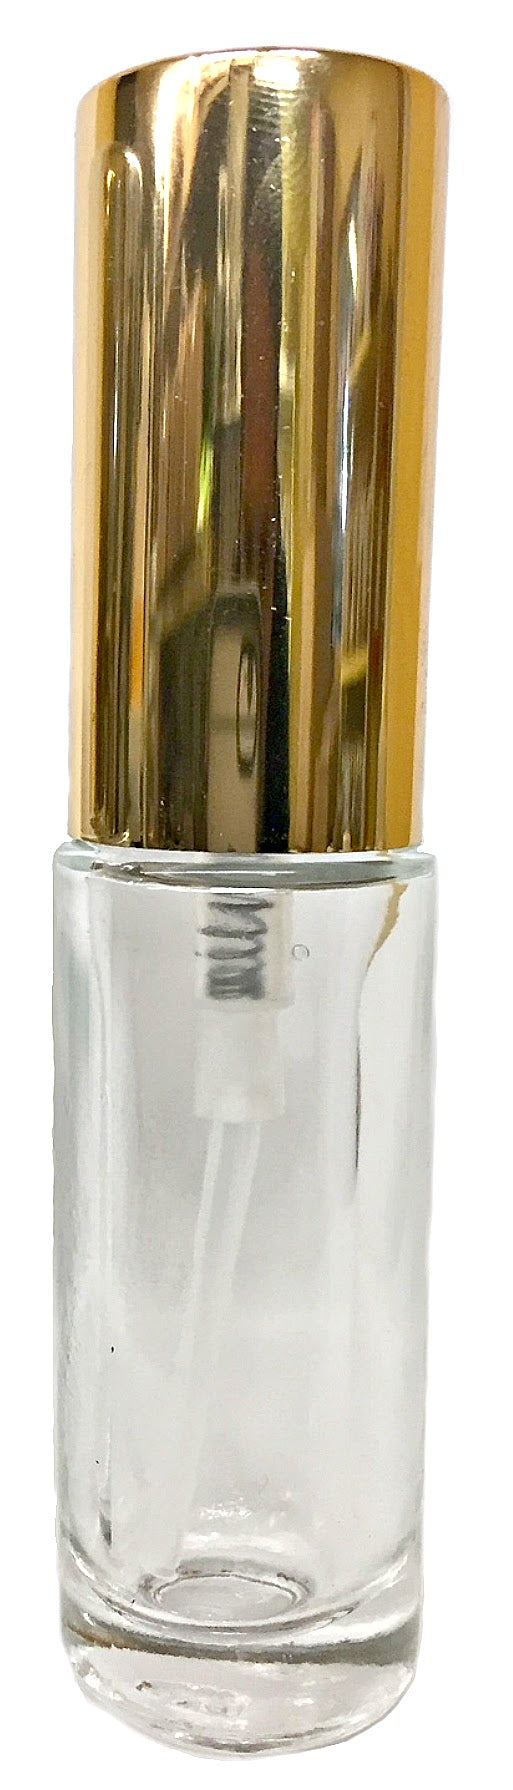 Refillable glass perfume bottle 12ml